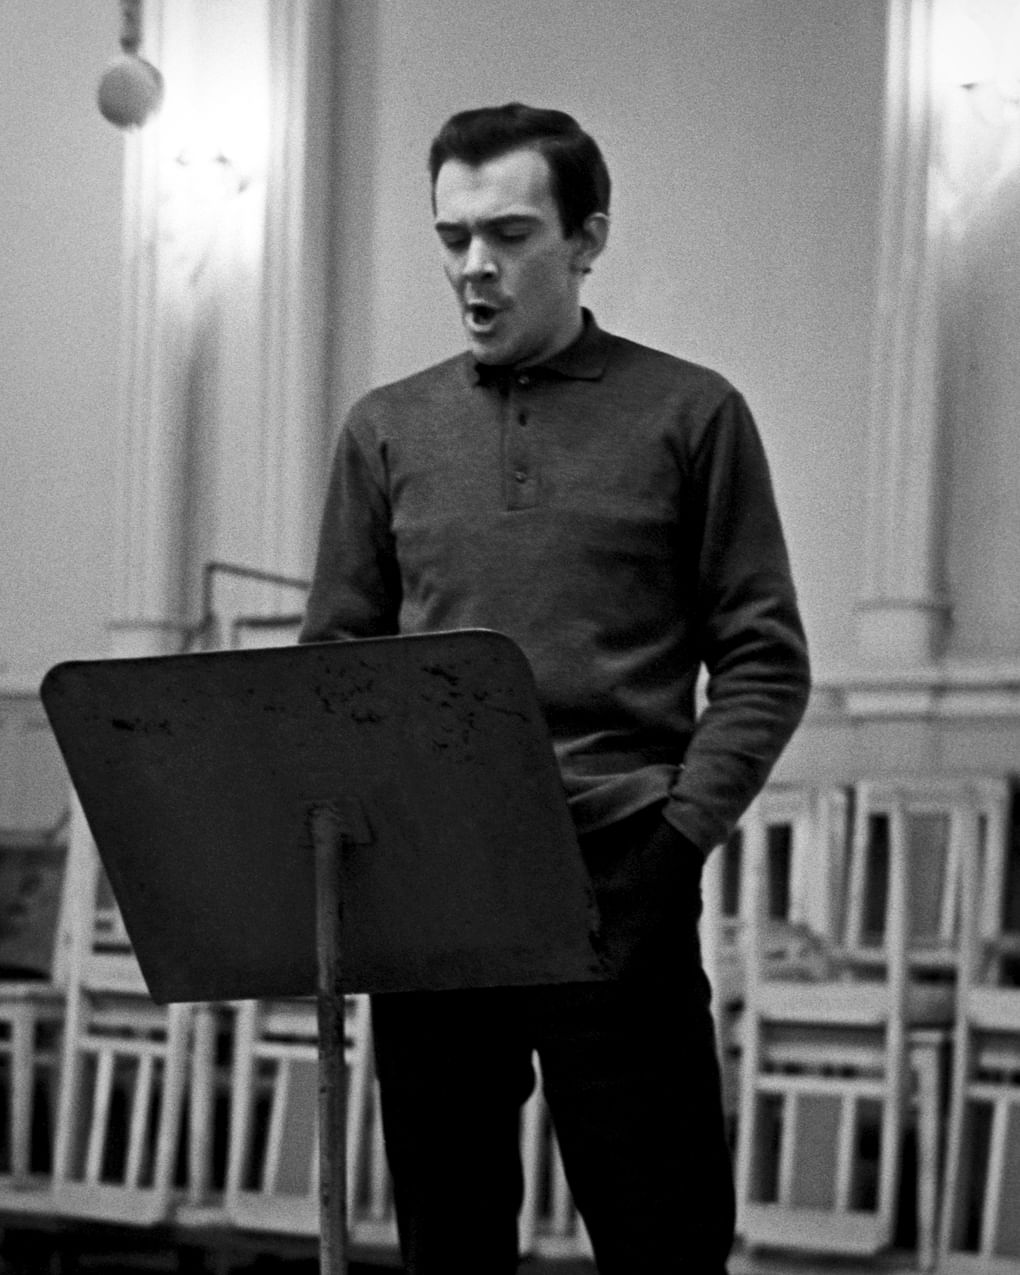 Муслим Магомаев во время записи в студии радиокомитета. Баку, Азербайджанская ССР, 1964 год. Фотография: Яшар Халилов / ТАСС